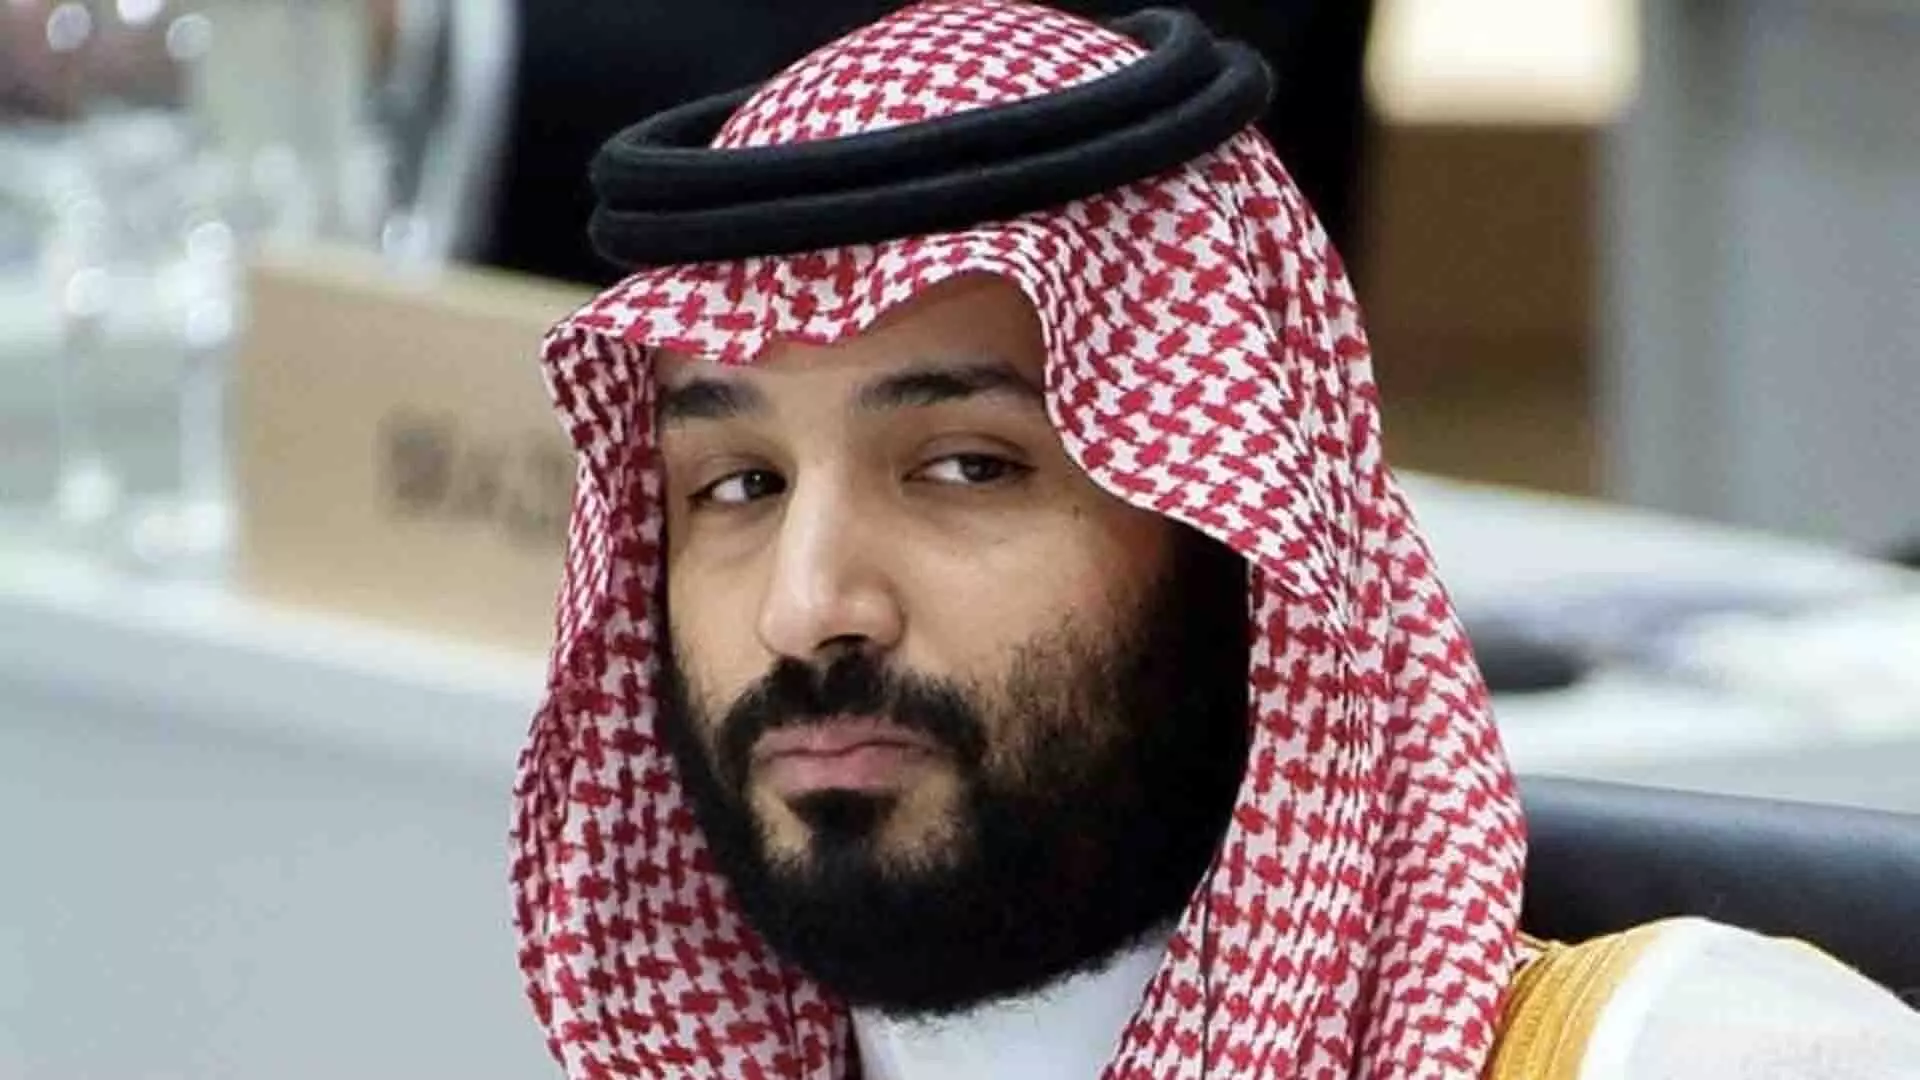 सऊदी क्राउन प्रिंस की 100 अरब डॉलर की विदेशी निवेश खोज लड़खड़ा गई